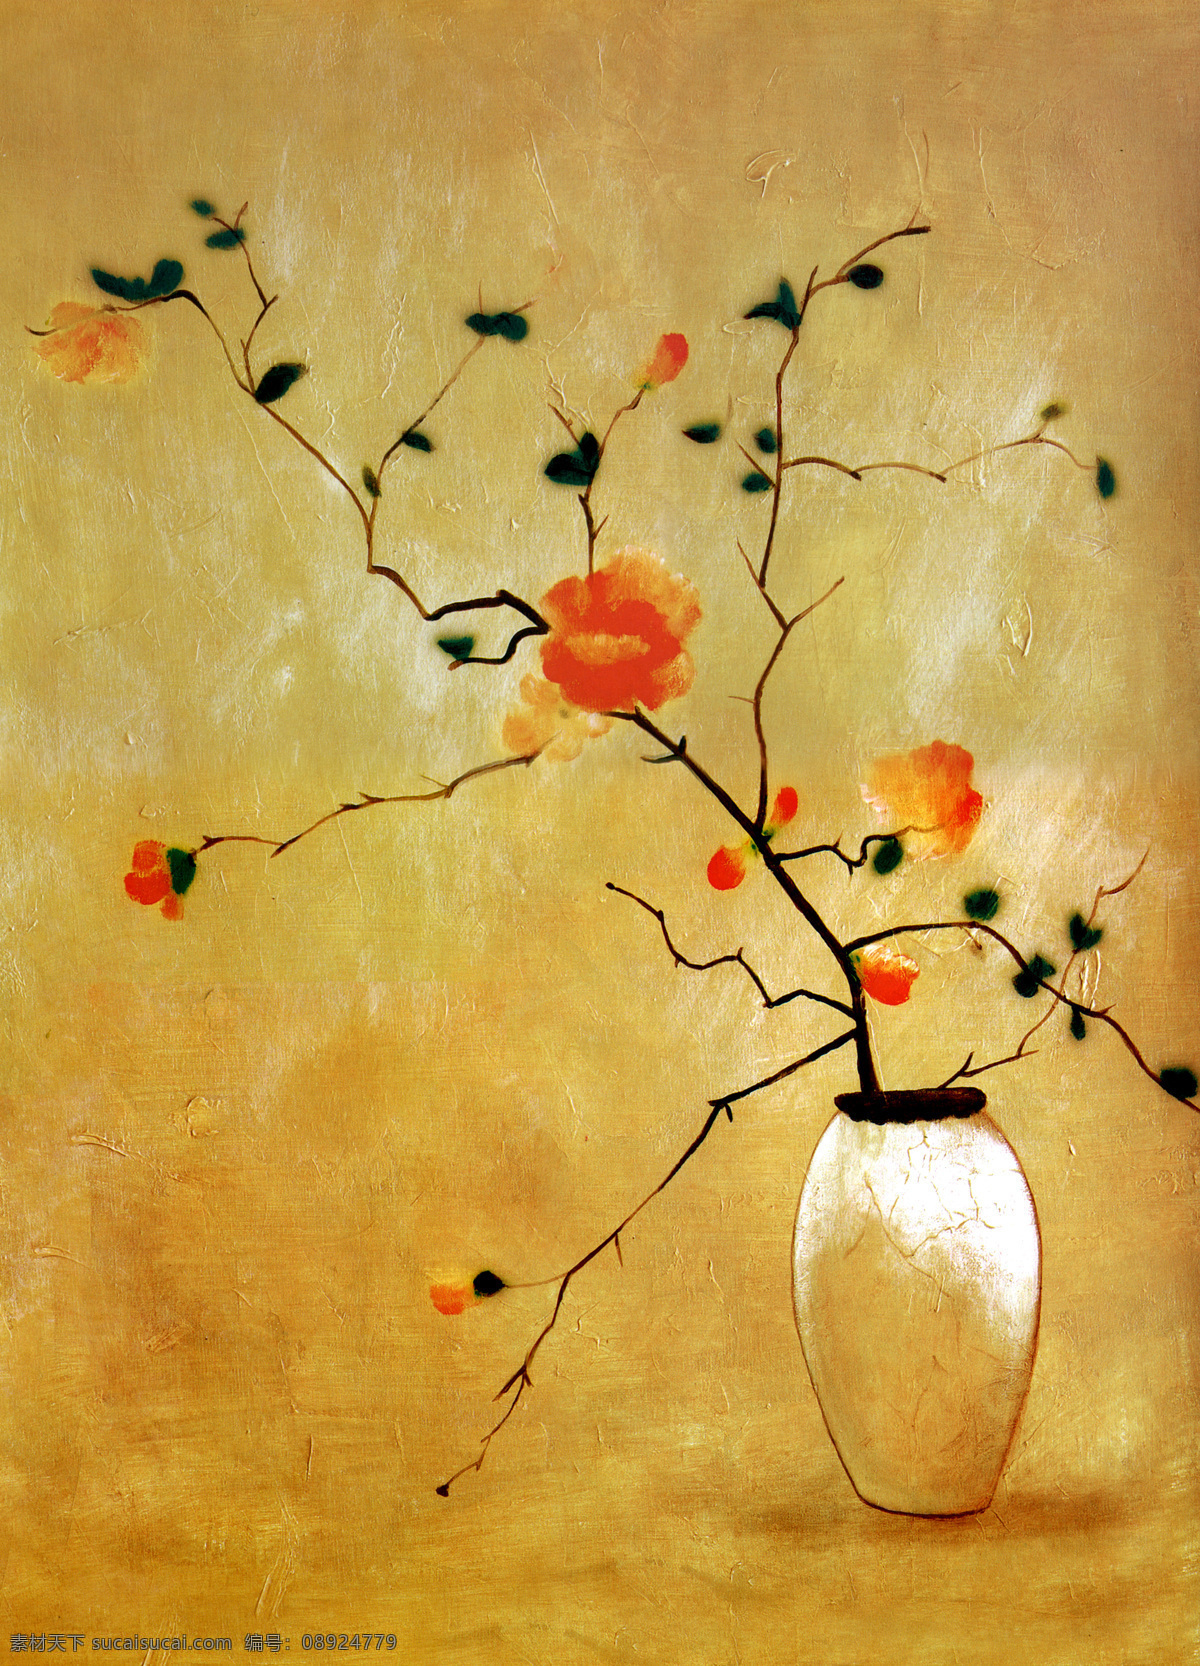 油画花卉 花卉 抽象 欧式经典油画 欧式 油画 相框 绘画 文化艺术 绘画书法